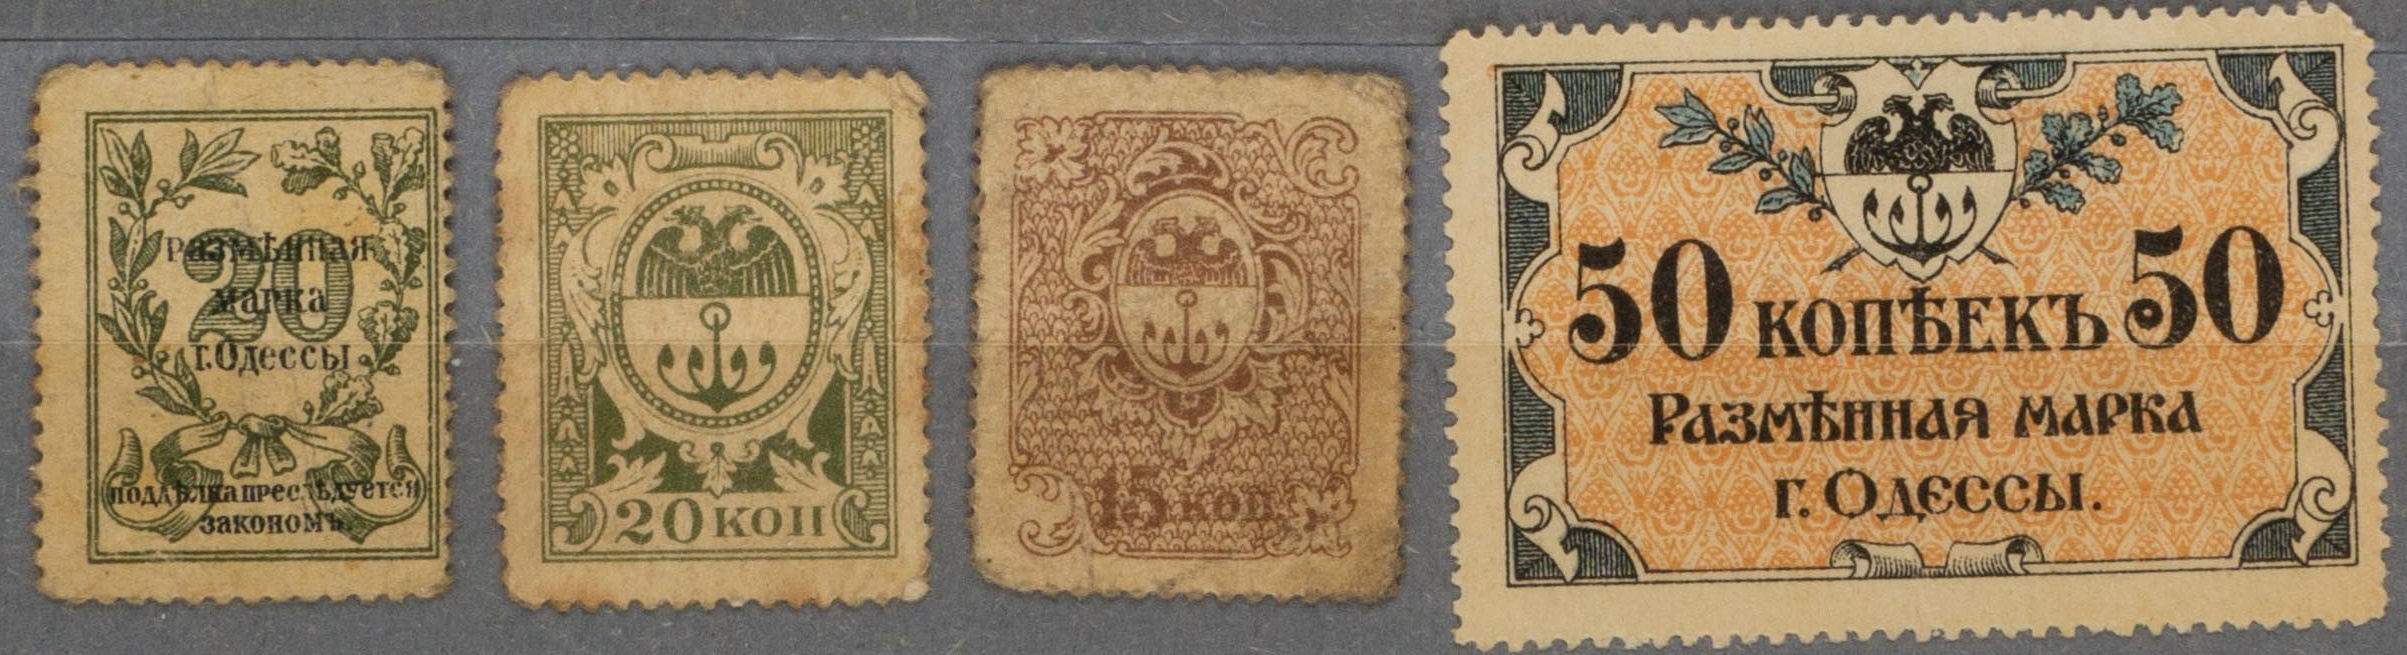 Одесса. 4 разменные марки. 1918.